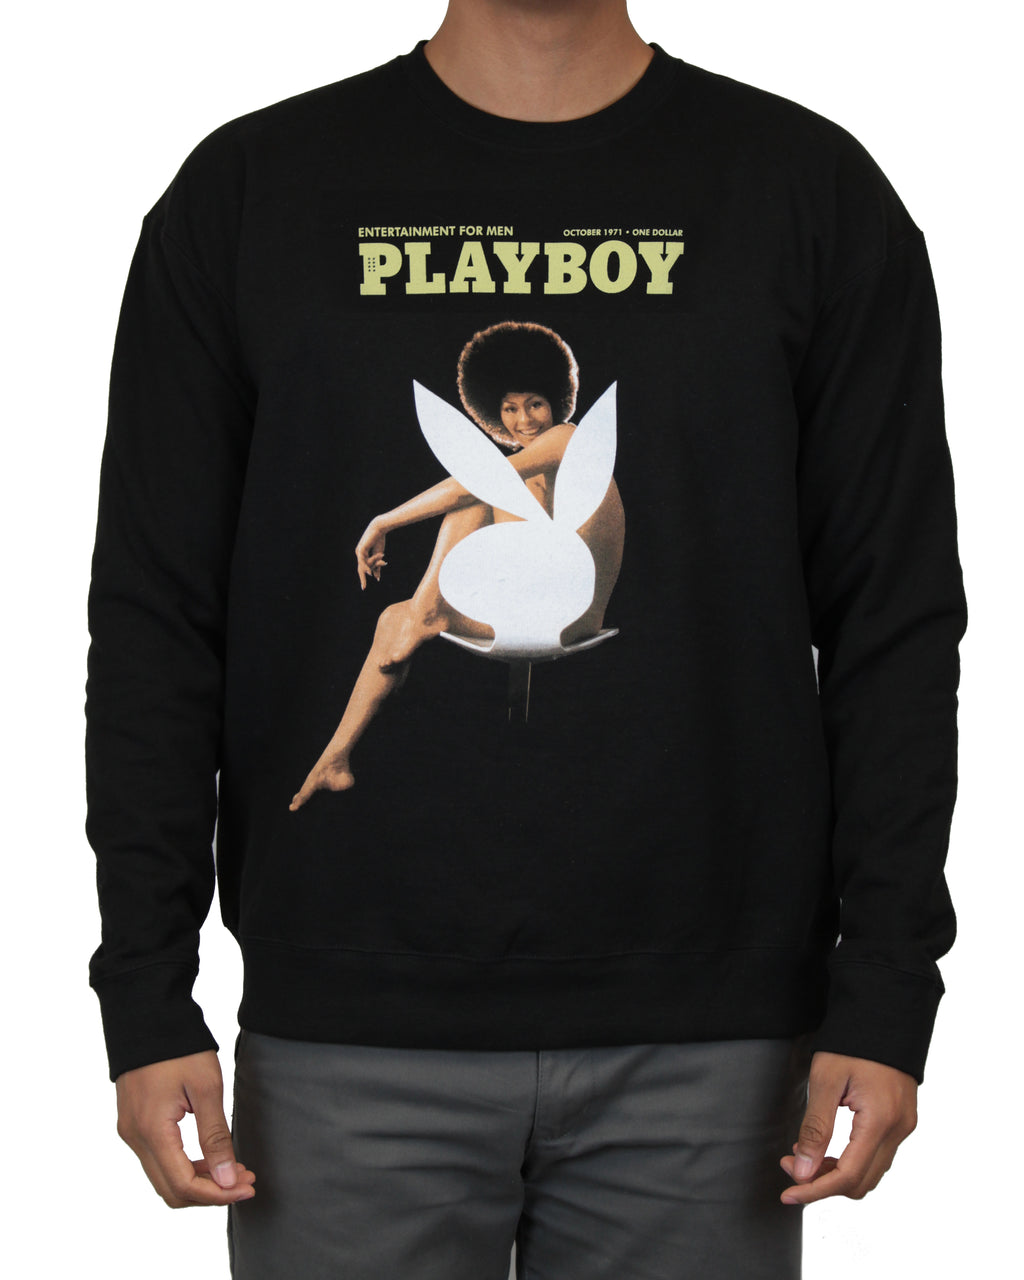 Playboy October 1971 Cover Men’s Sweatshirt